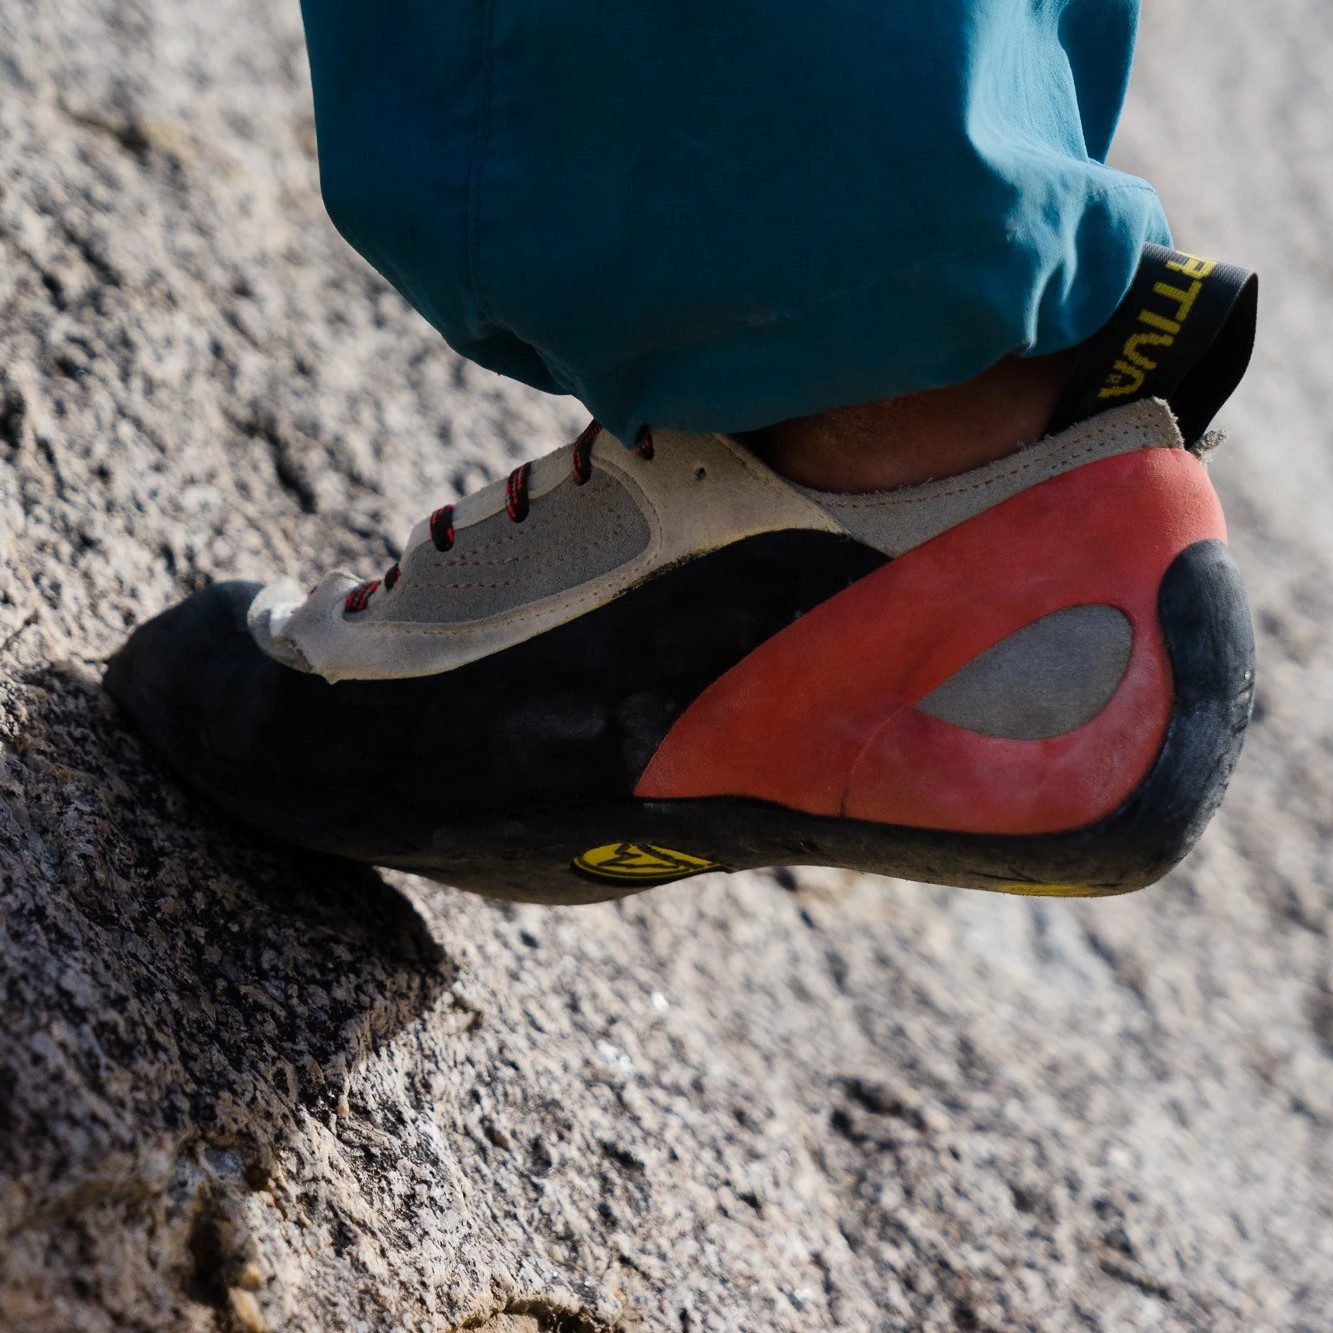 La Sportiva Finale Woman Rock Climbing Shoe